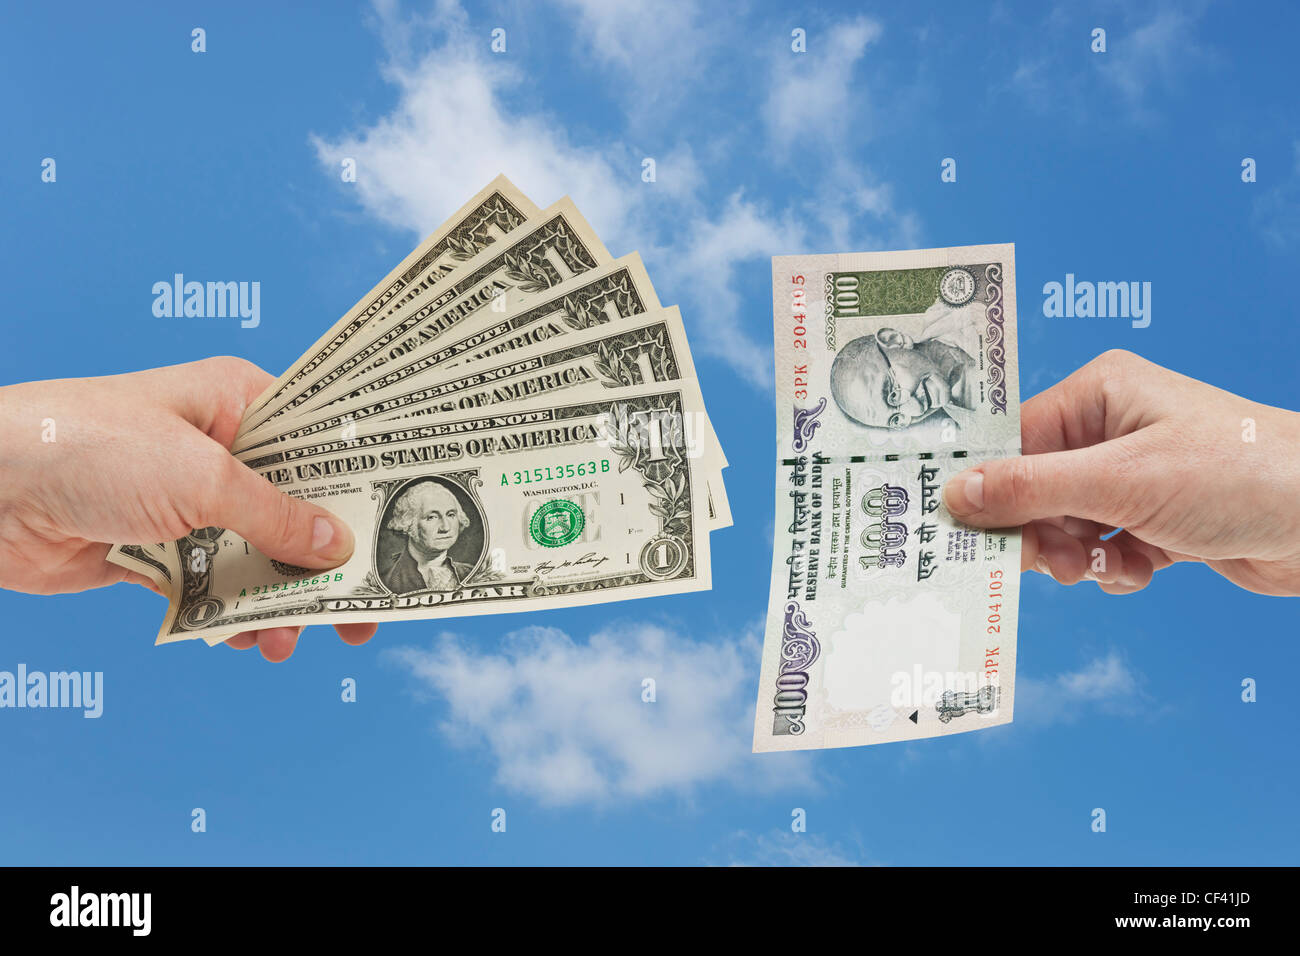 Fünf 1 US-Dollar-Scheine in der Hand gehalten werden. Auf der anderen Seite ist eine indische 100 Rupien Rechnung in der Hand, Hintergrund Himmel gehalten. Stockfoto